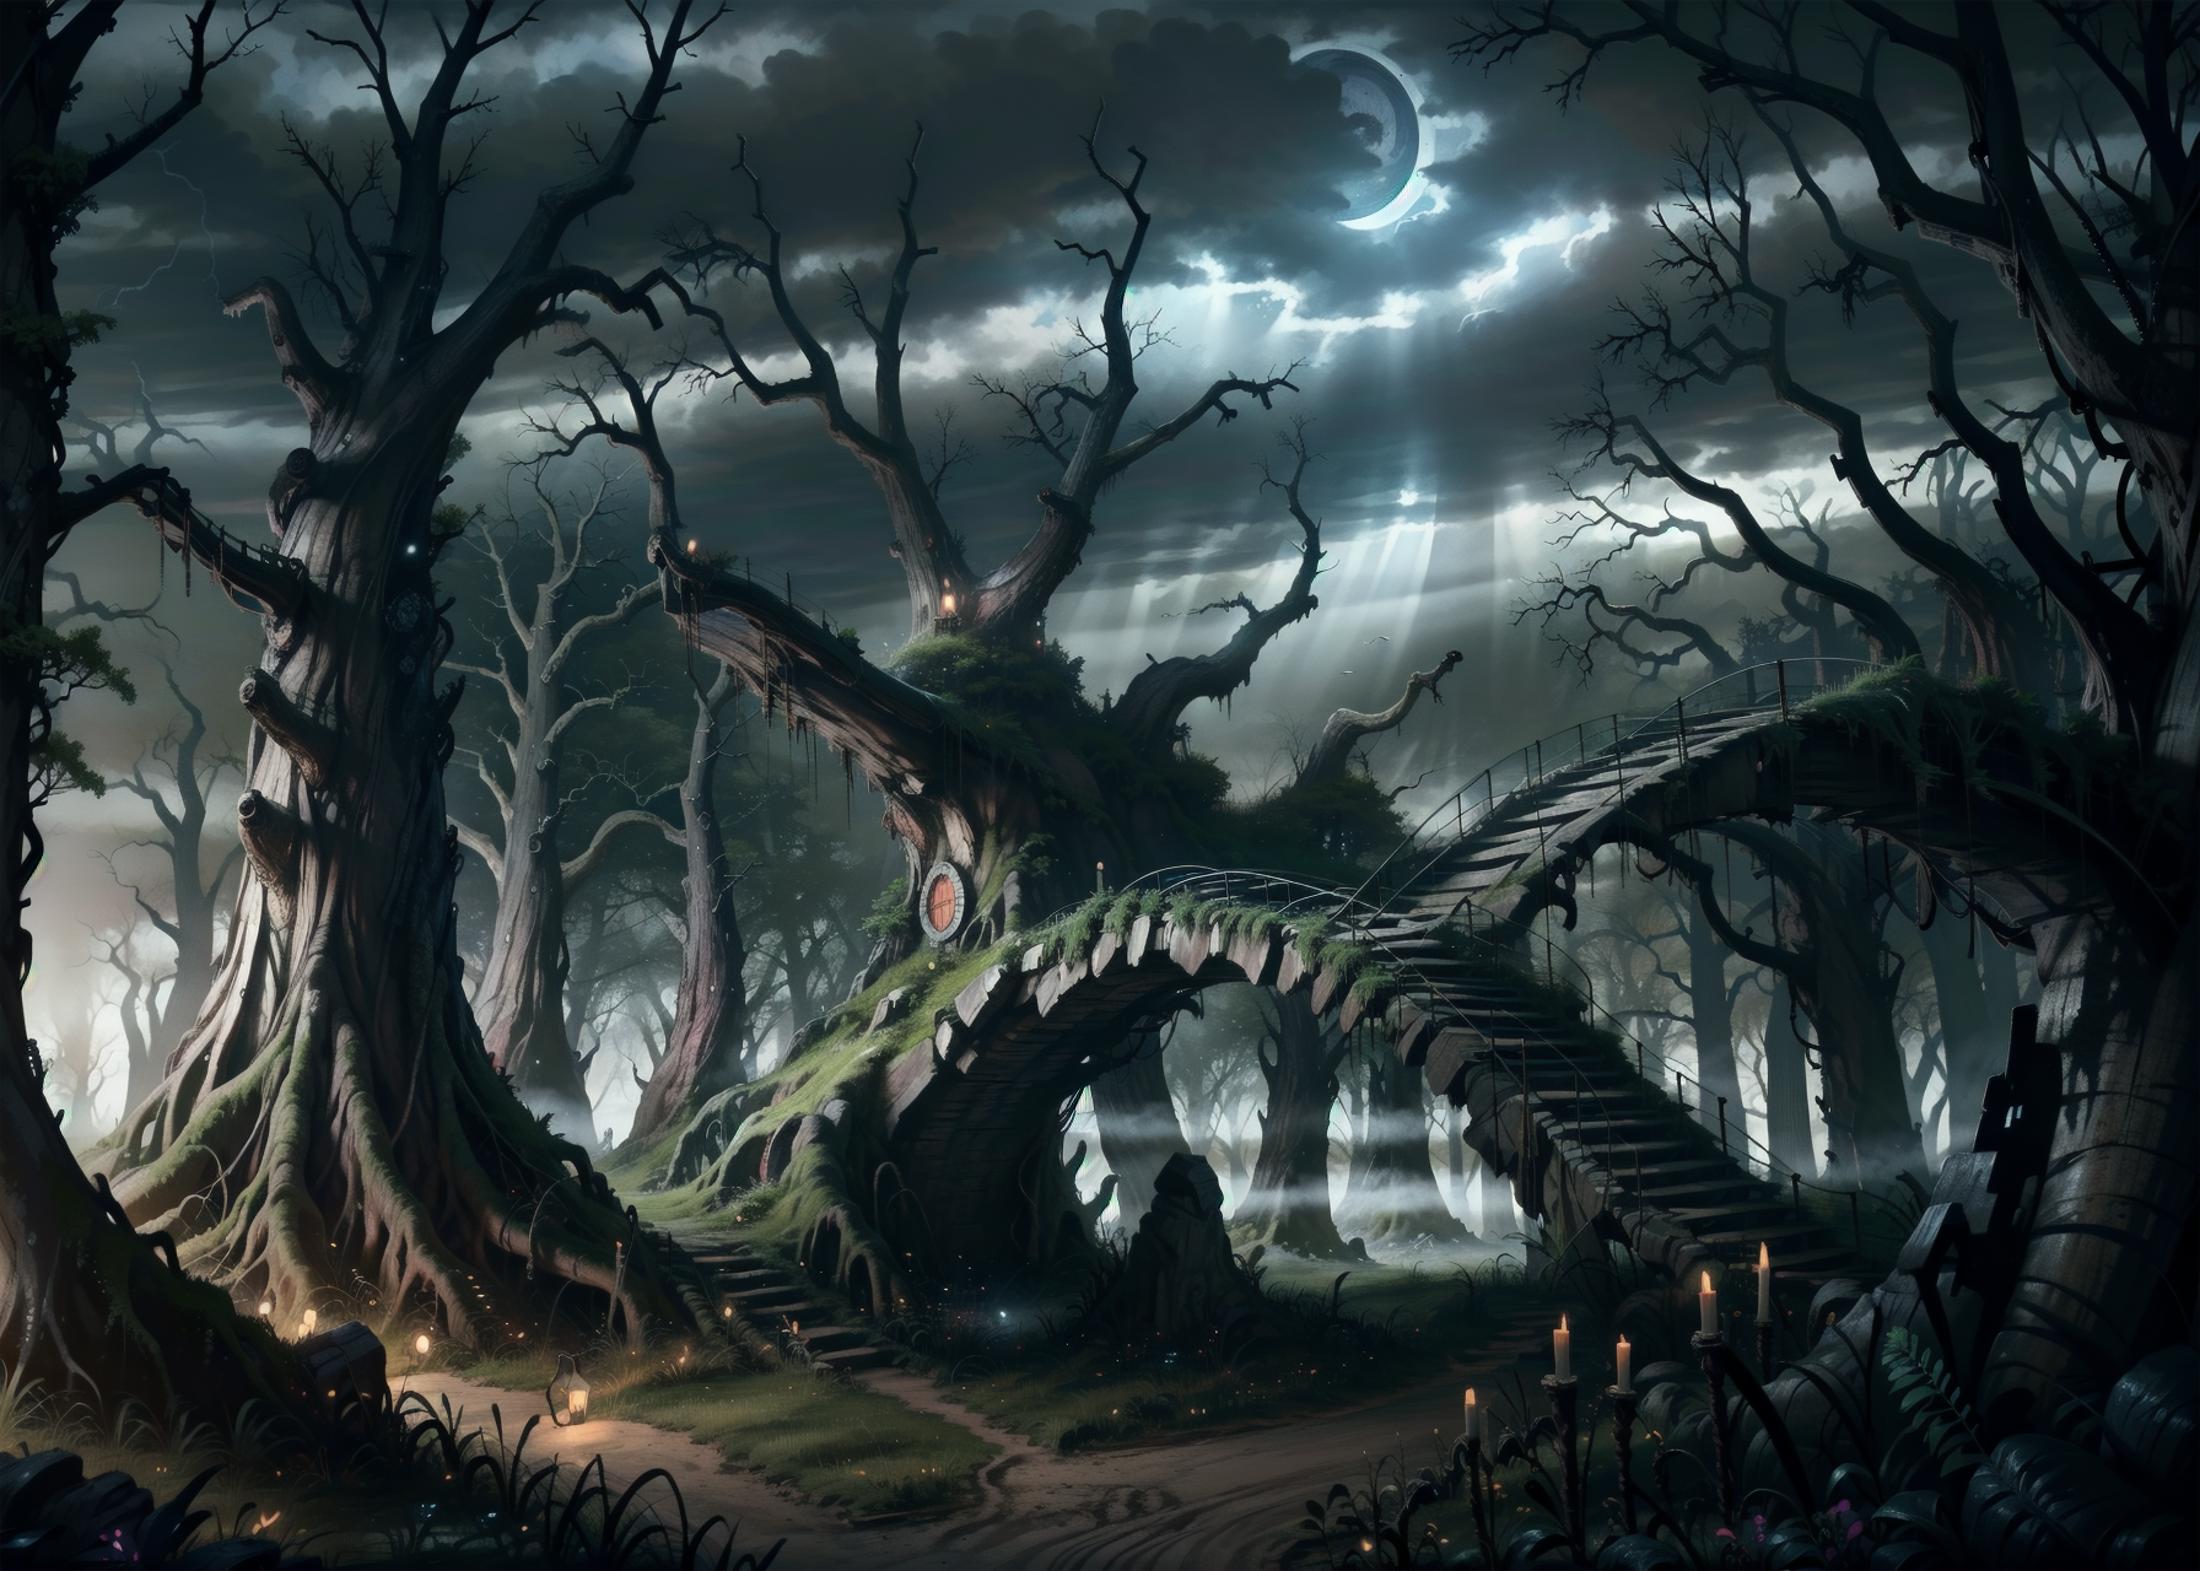 Fantasy Landscape image by sentrk